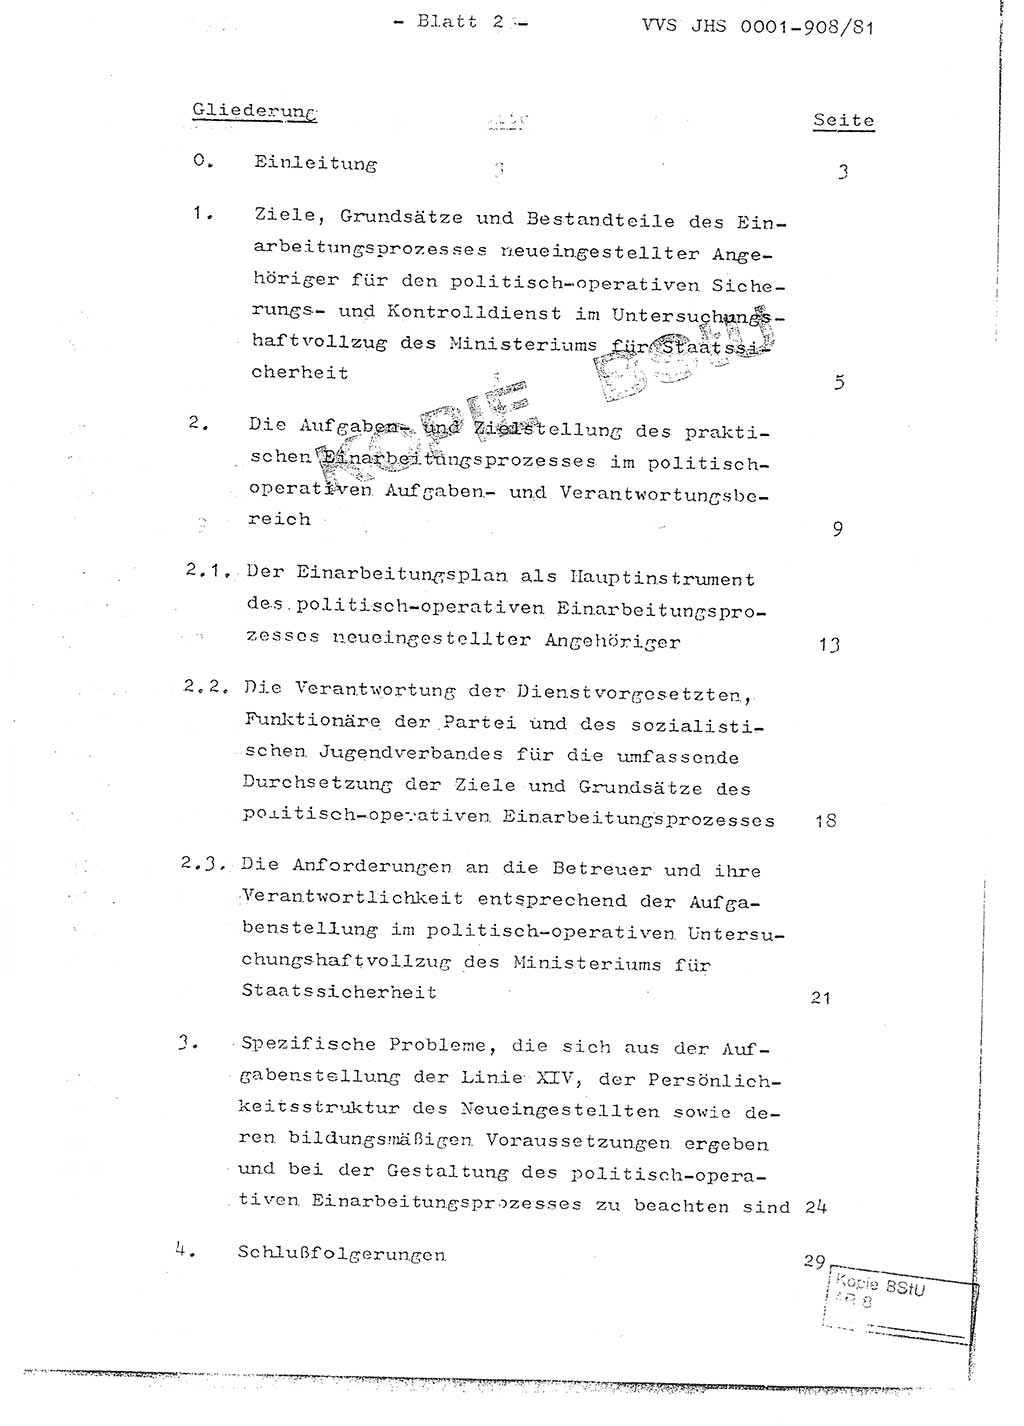 Fachschulabschlußarbeit Oberleutnant Wolfgang Wittmann (Abt. ⅩⅣ), Ministerium für Staatssicherheit (MfS) [Deutsche Demokratische Republik (DDR)], Juristische Hochschule (JHS), Vertrauliche Verschlußsache (VVS) o001-908/82, Potsdam 1982, Blatt 2 (FS-Abschl.-Arb. MfS DDR JHS VVS o001-908/82 1982, Bl. 2)